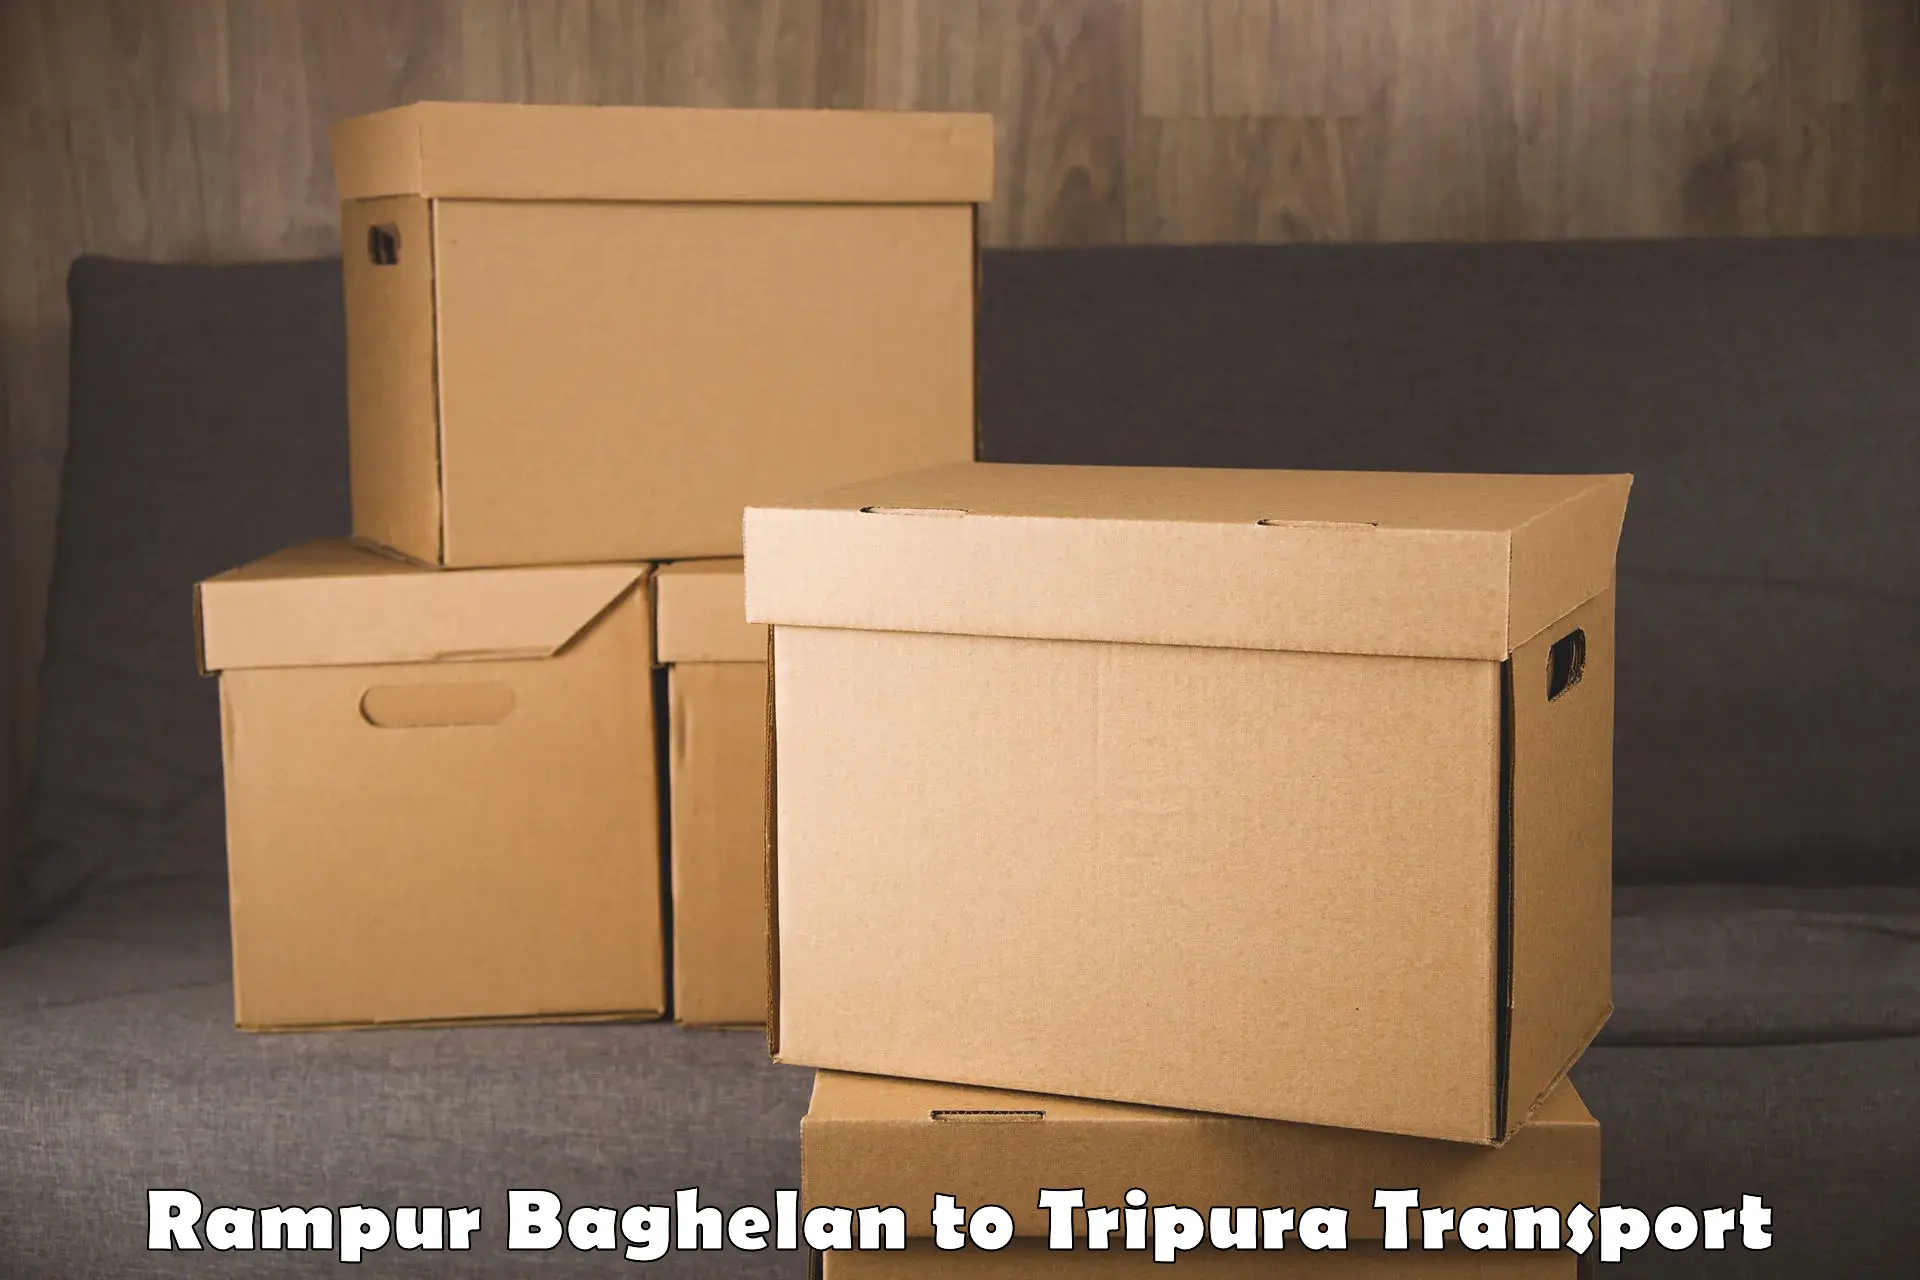 Lorry transport service Rampur Baghelan to IIIT Agartala